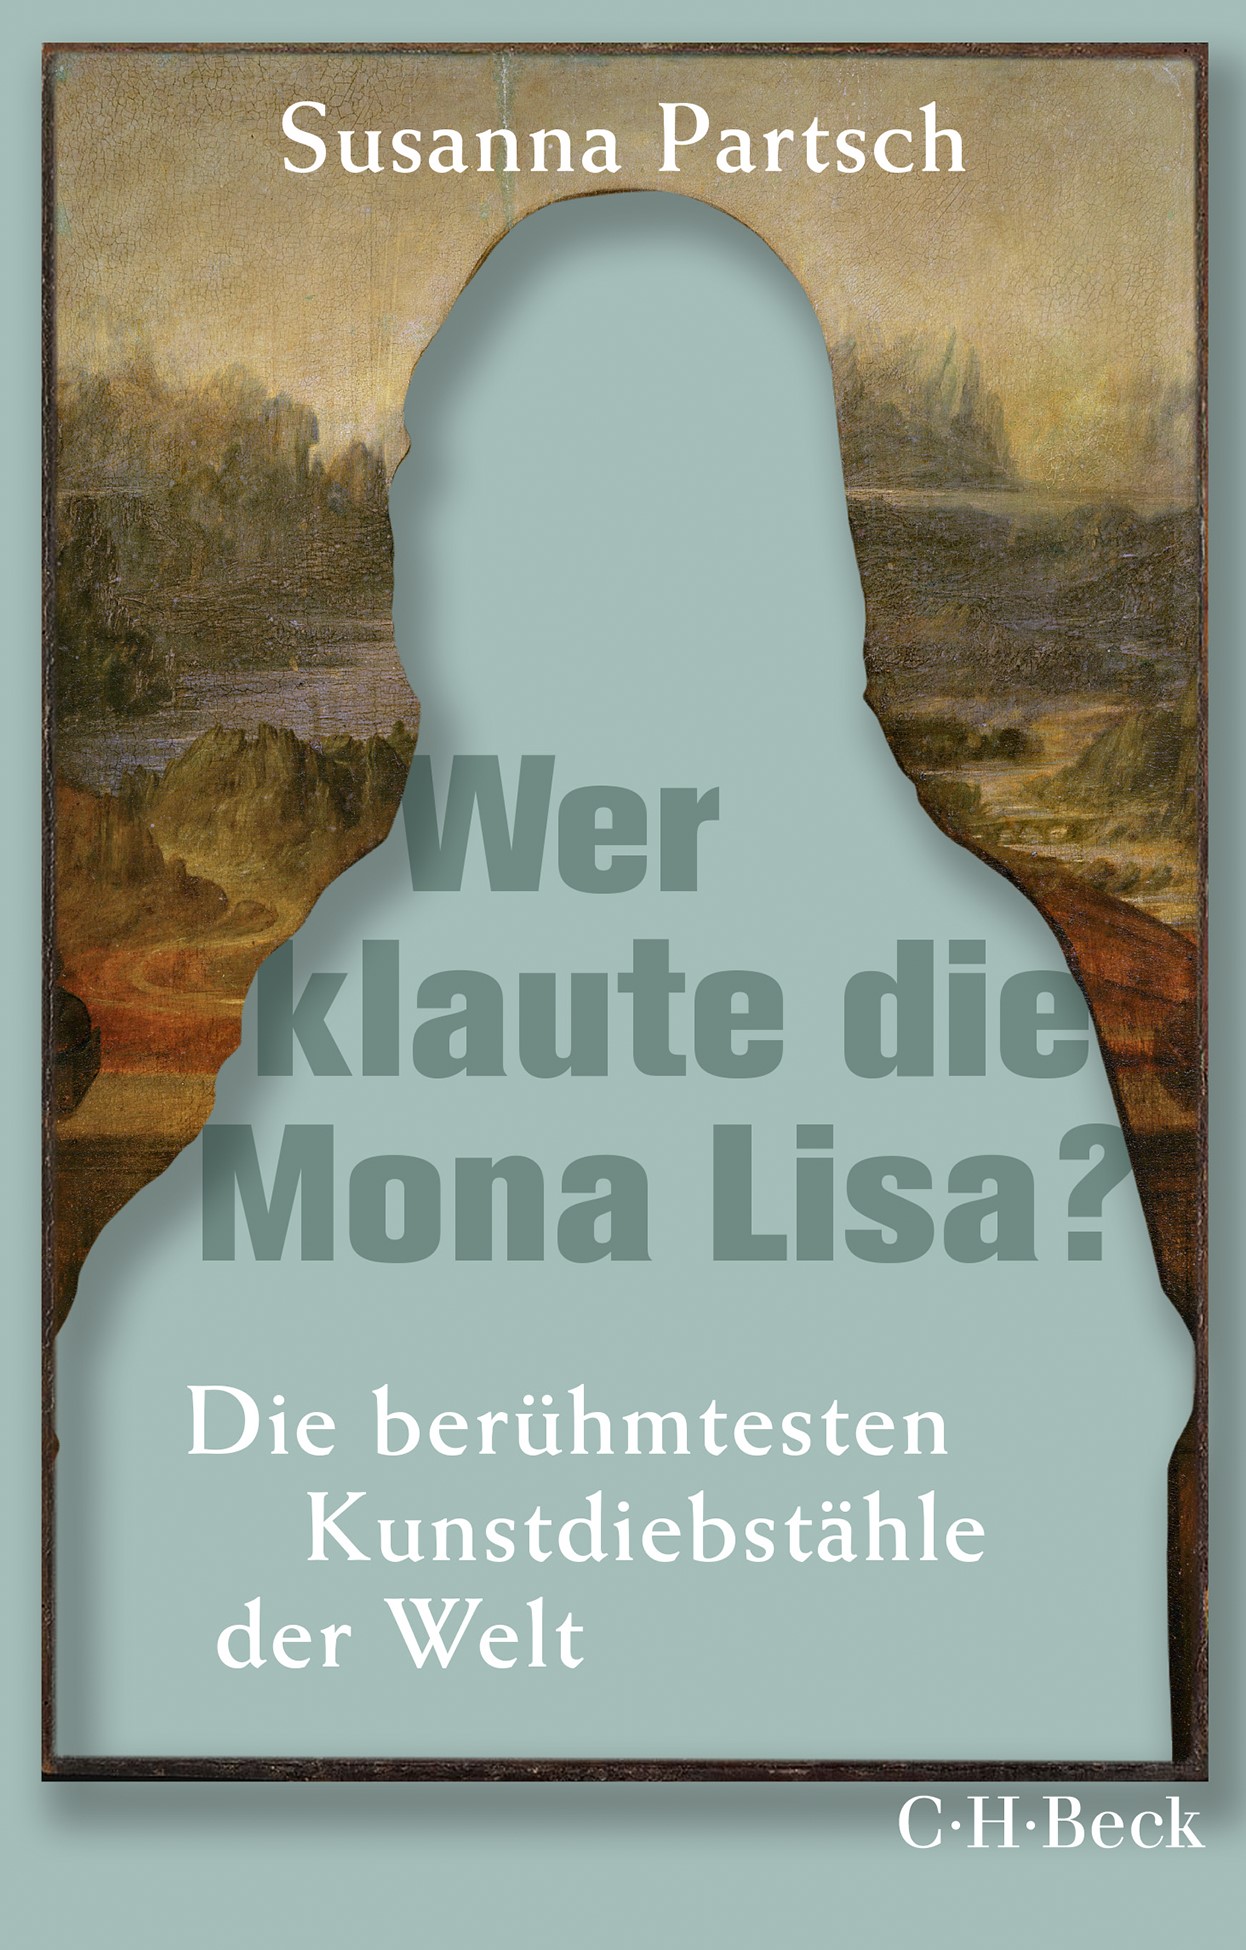 Cover: Partsch, Susanna, Wer klaute die Mona Lisa?